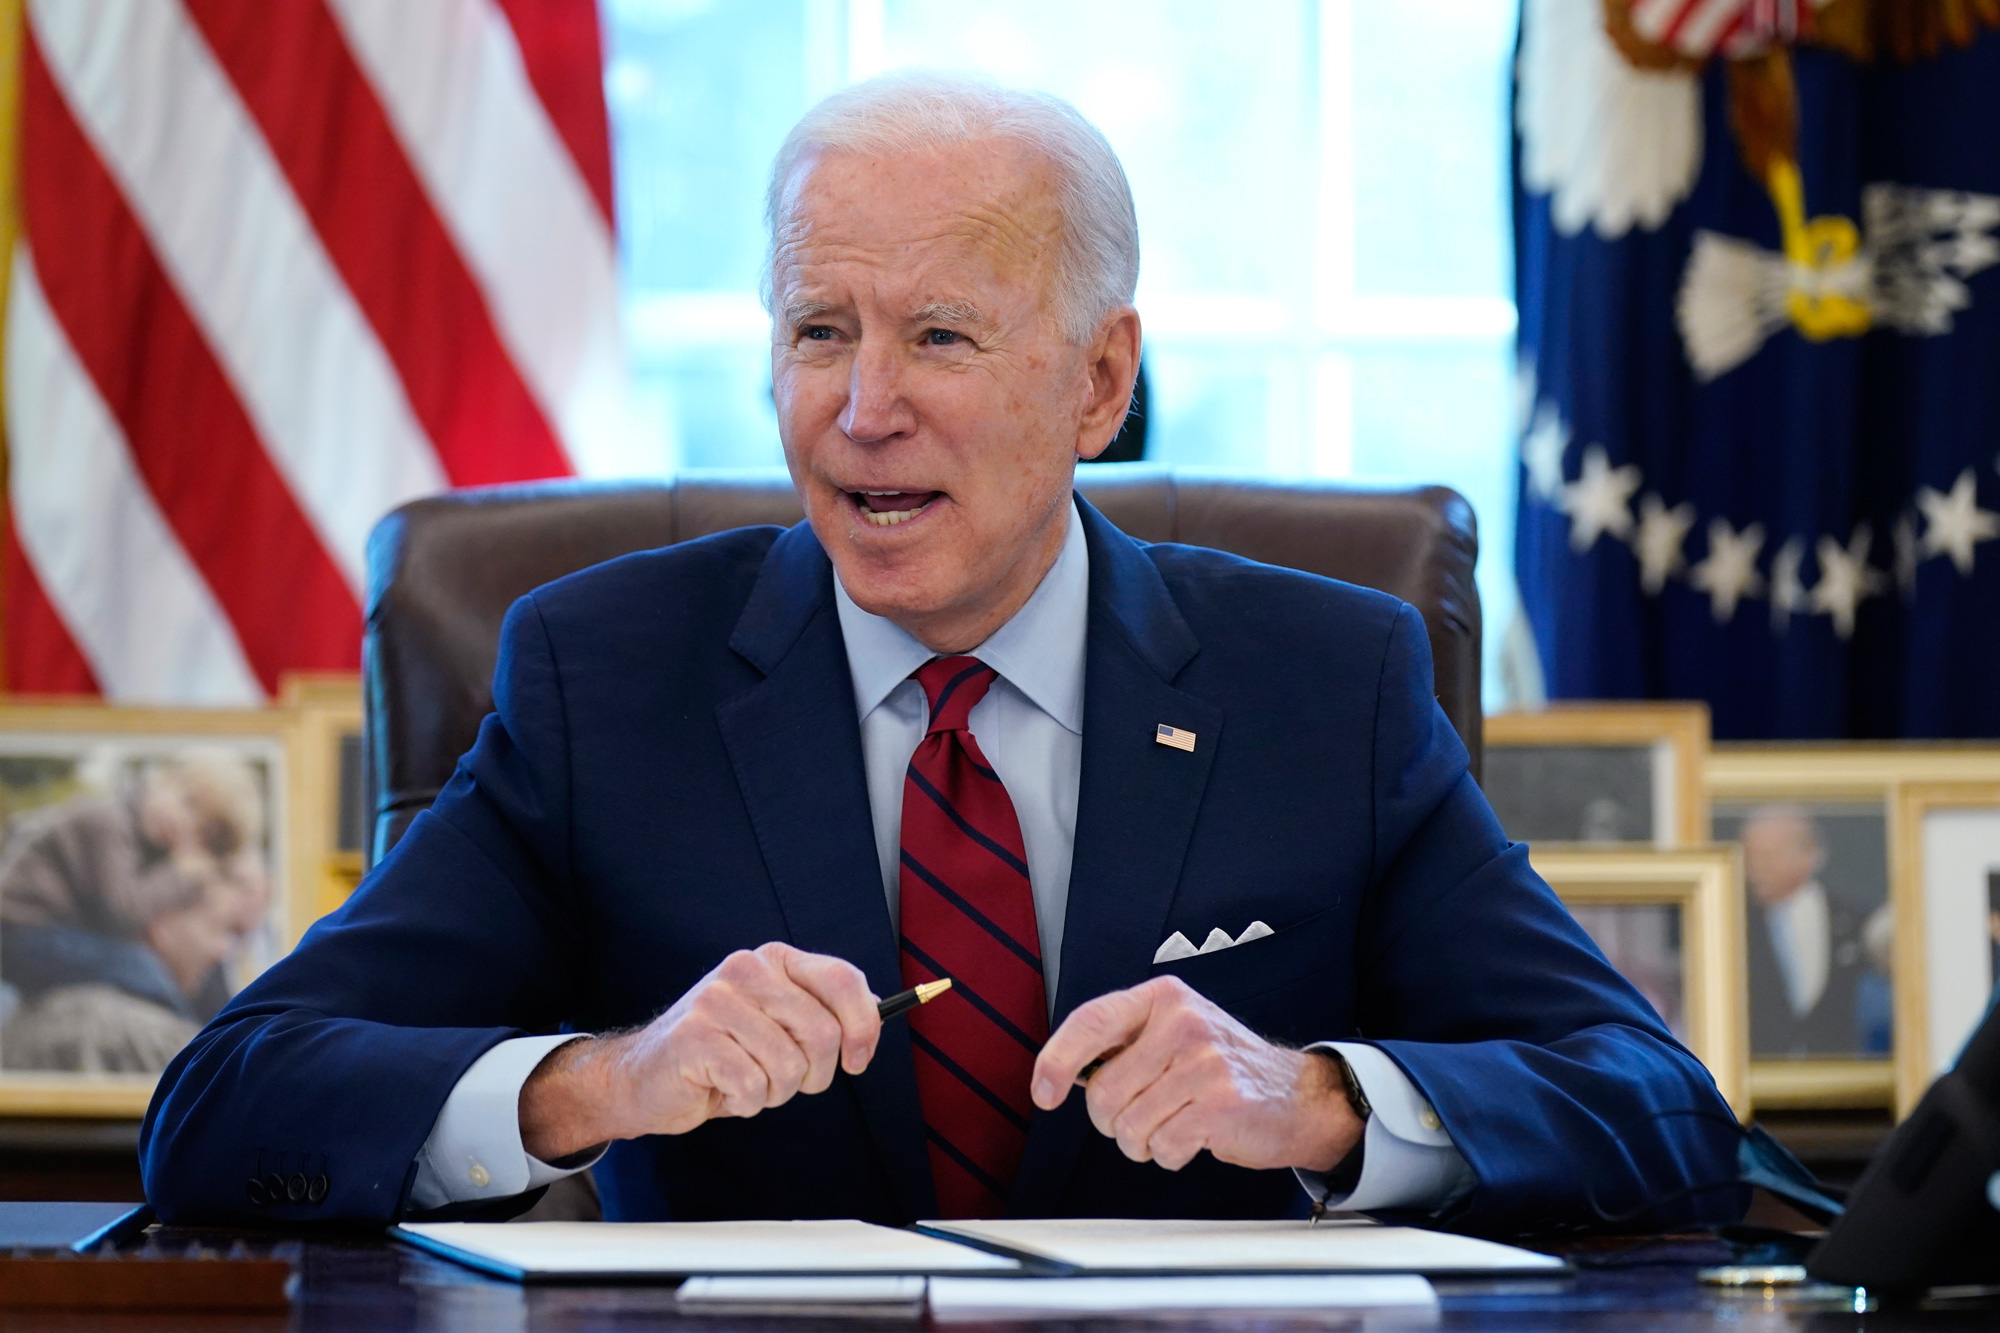 President Joe Biden speaking at his desk